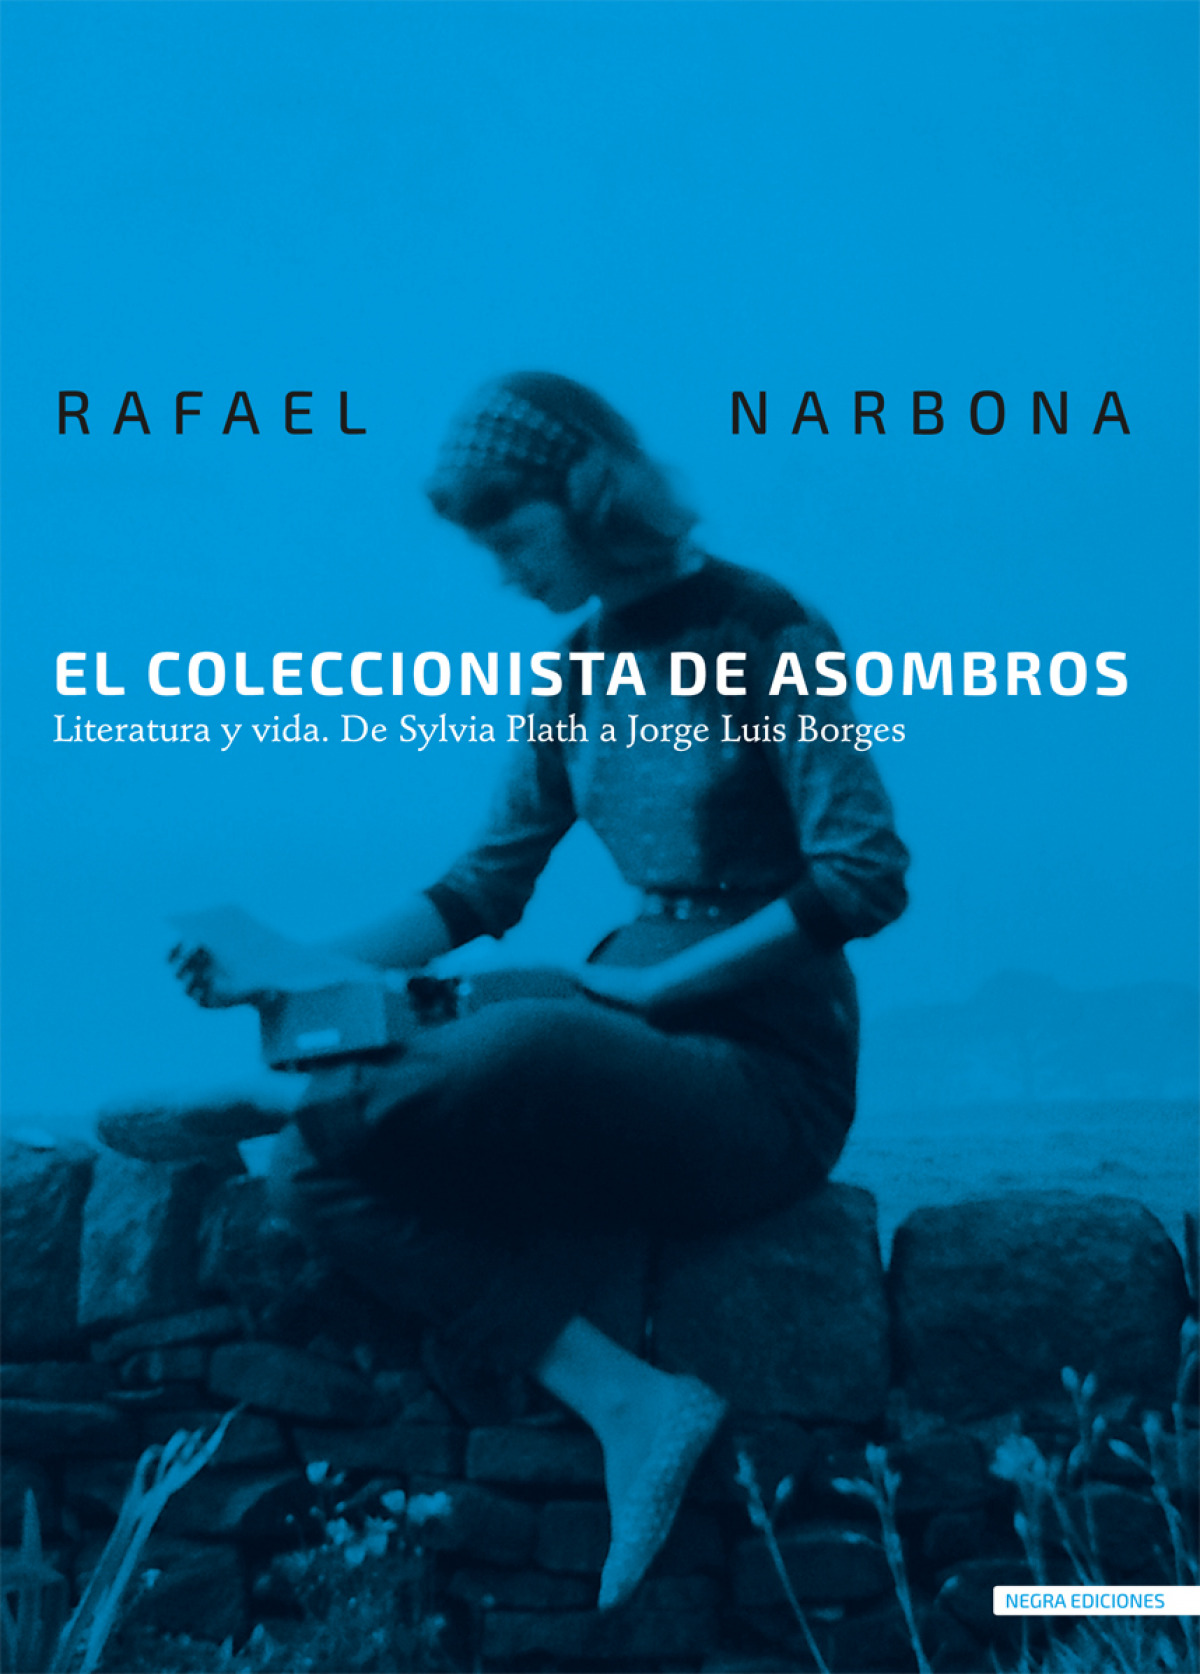 Siete razones para leer El coleccionista de asombros de Rafael Narbona